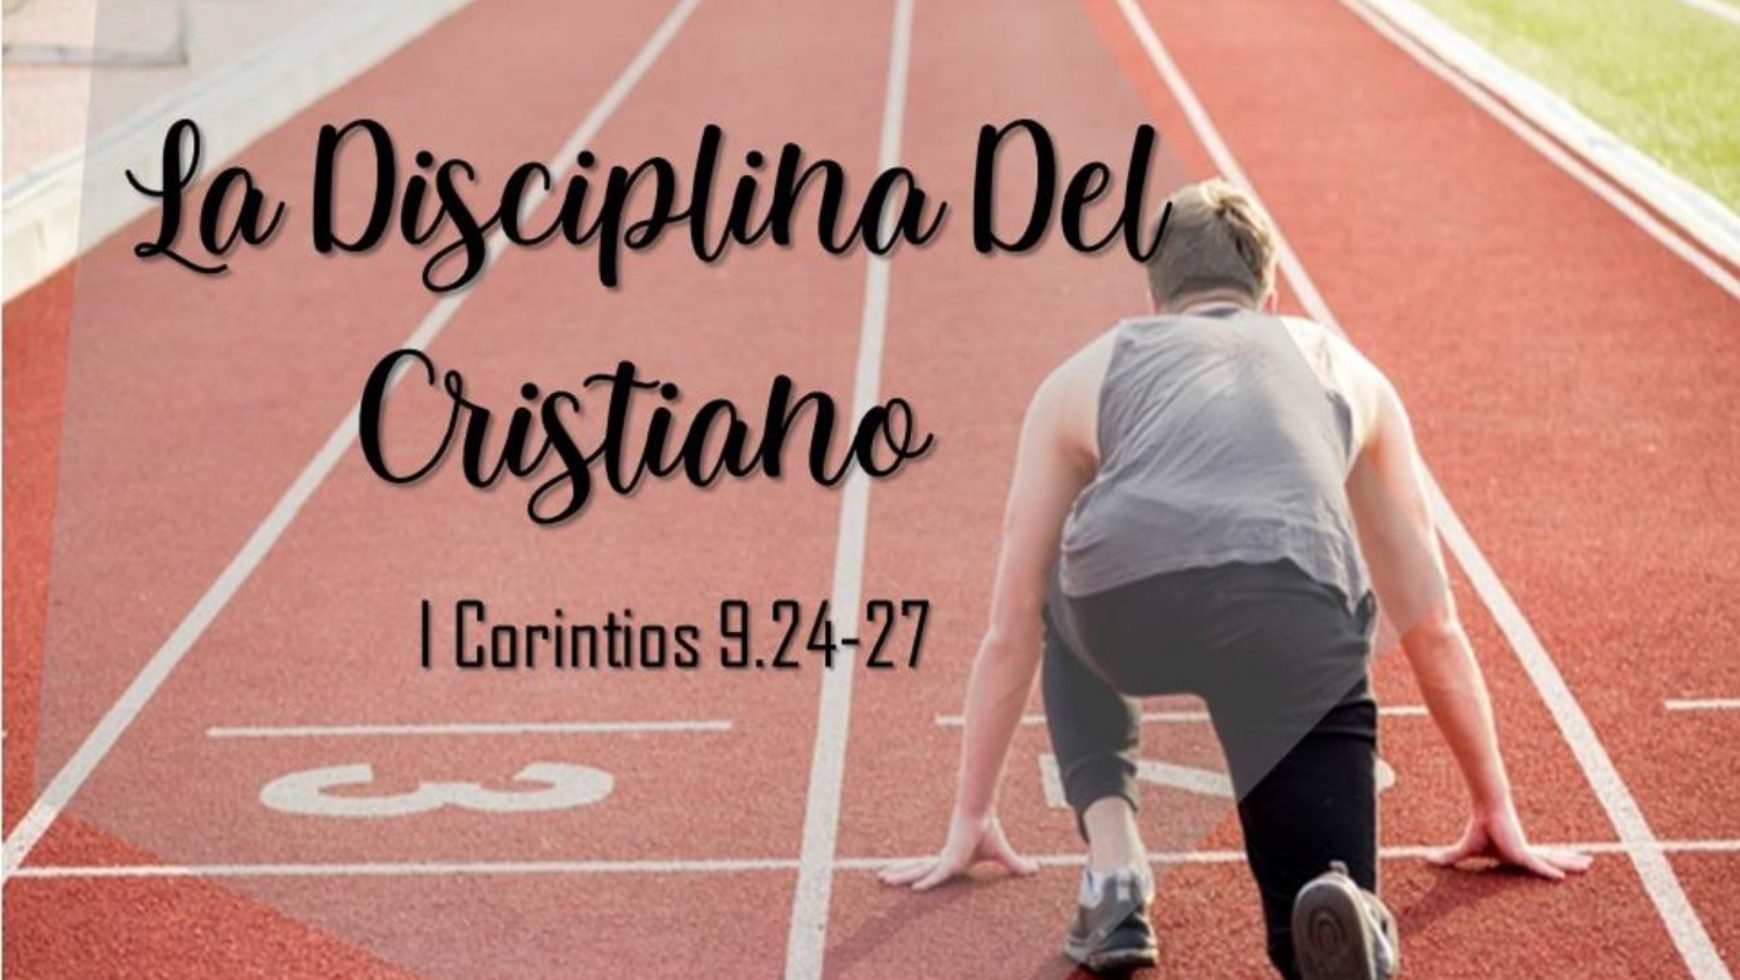 La disciplina del cristiano